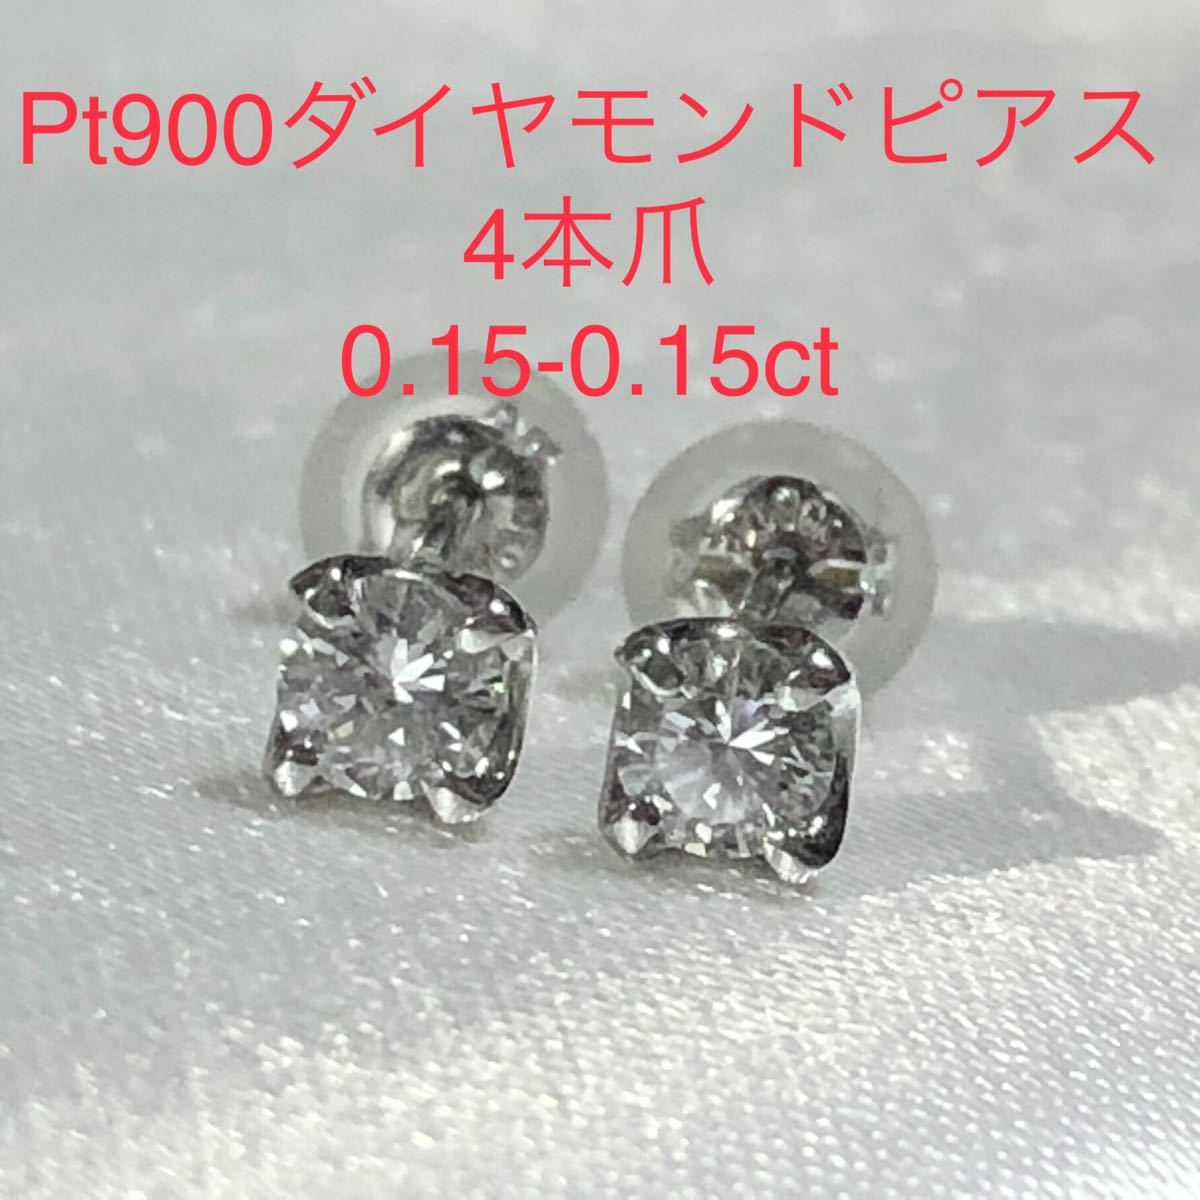 日本に pt900＊ダイヤモンドピアス ピアス(両耳用)